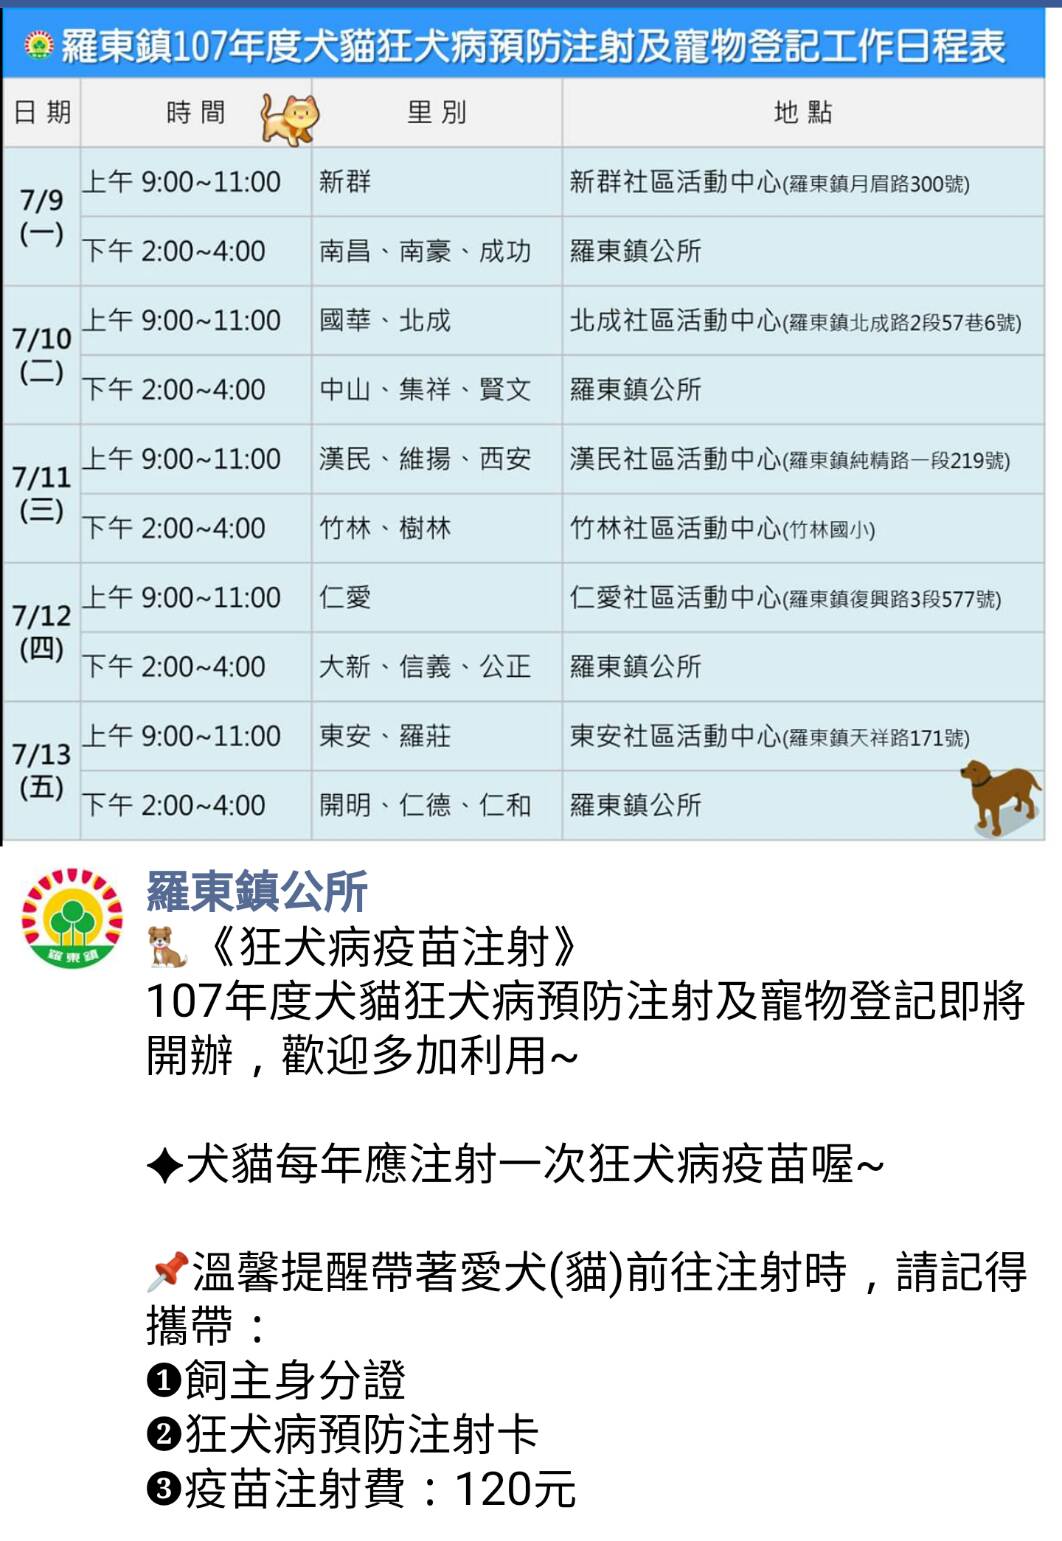 犬貓注射狂犬病疫苗  明日羅東鎮施打最後一天